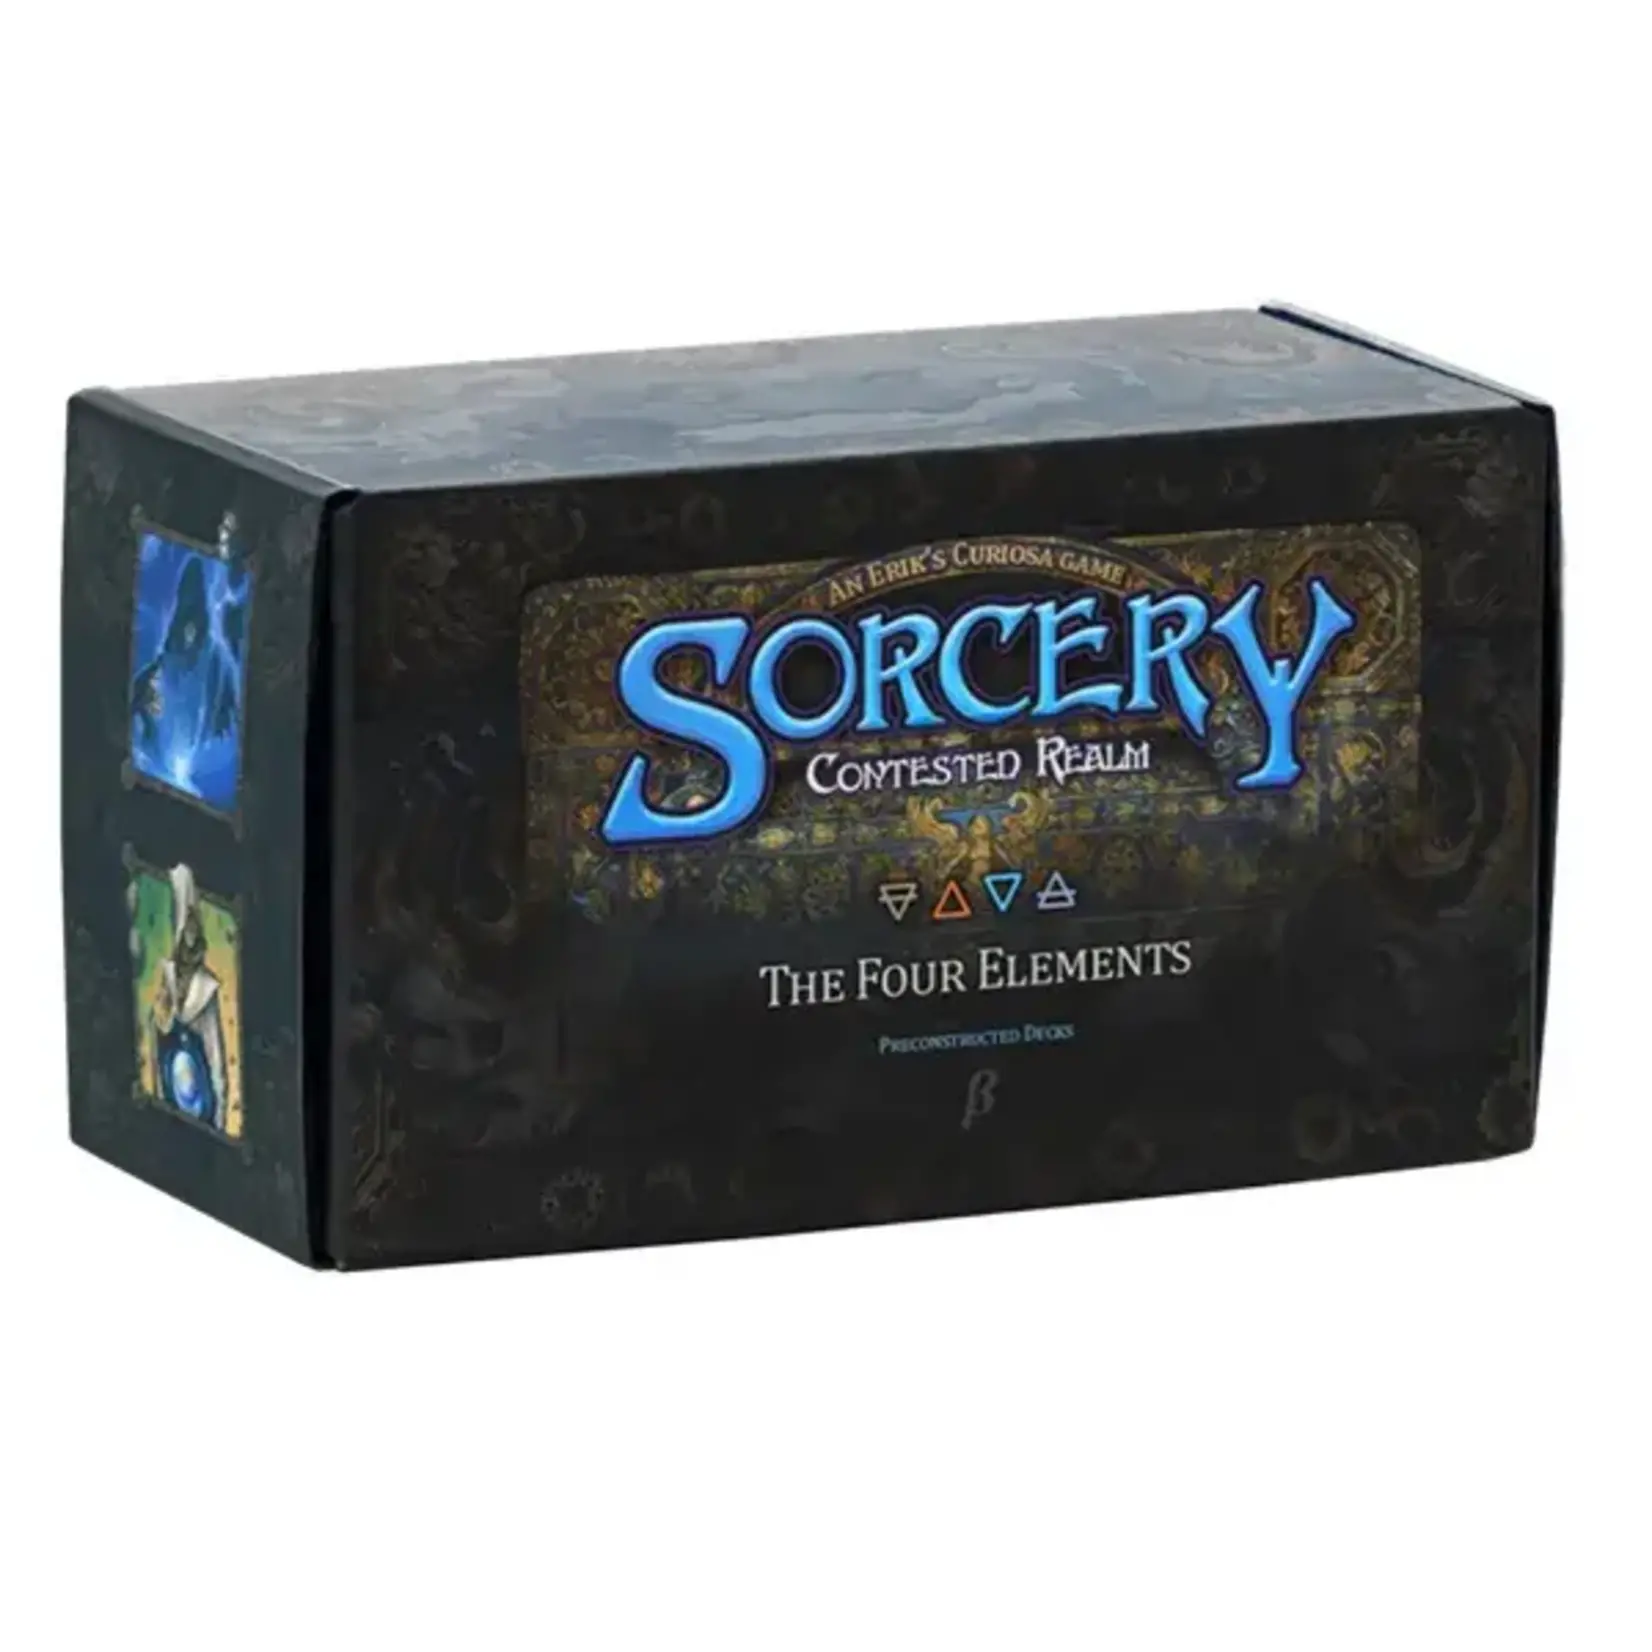 Sorcery Sorcery: Contested Realm Precon Box (PRE-ORDER)